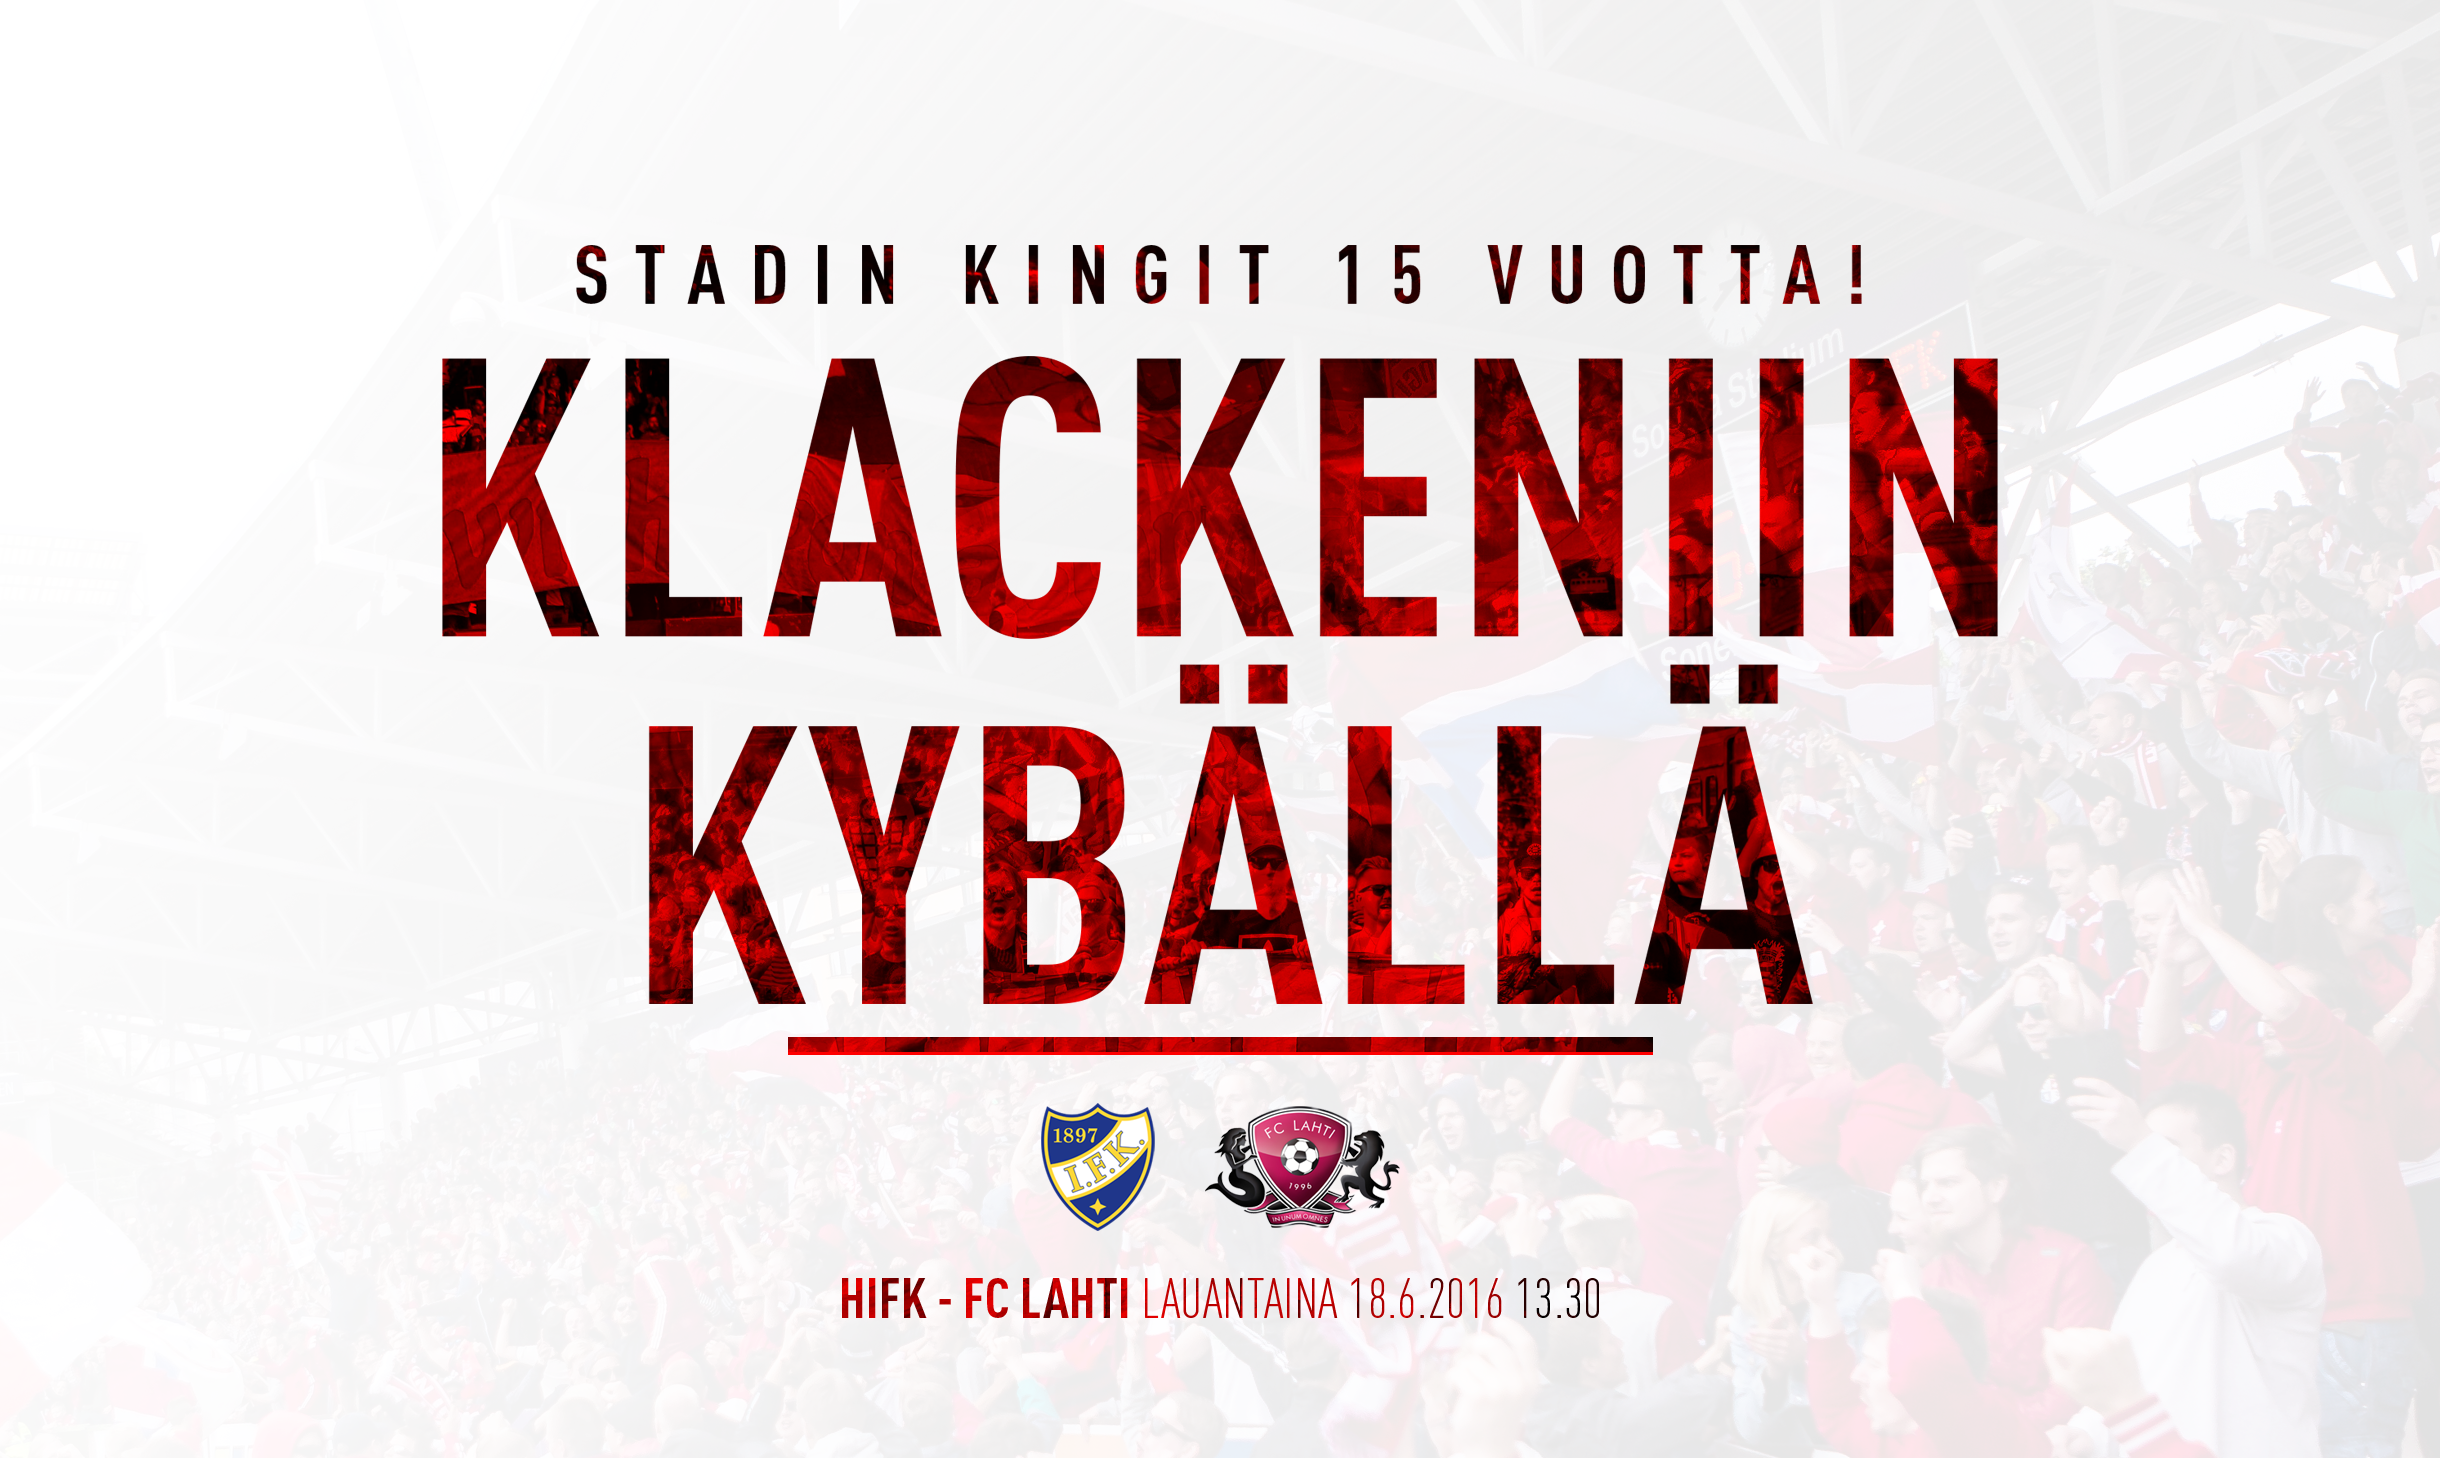 HIFK – FC Lahti: Stadin Kingit 15 vuotta – 10 euron ennakkoliput Klackeniin!